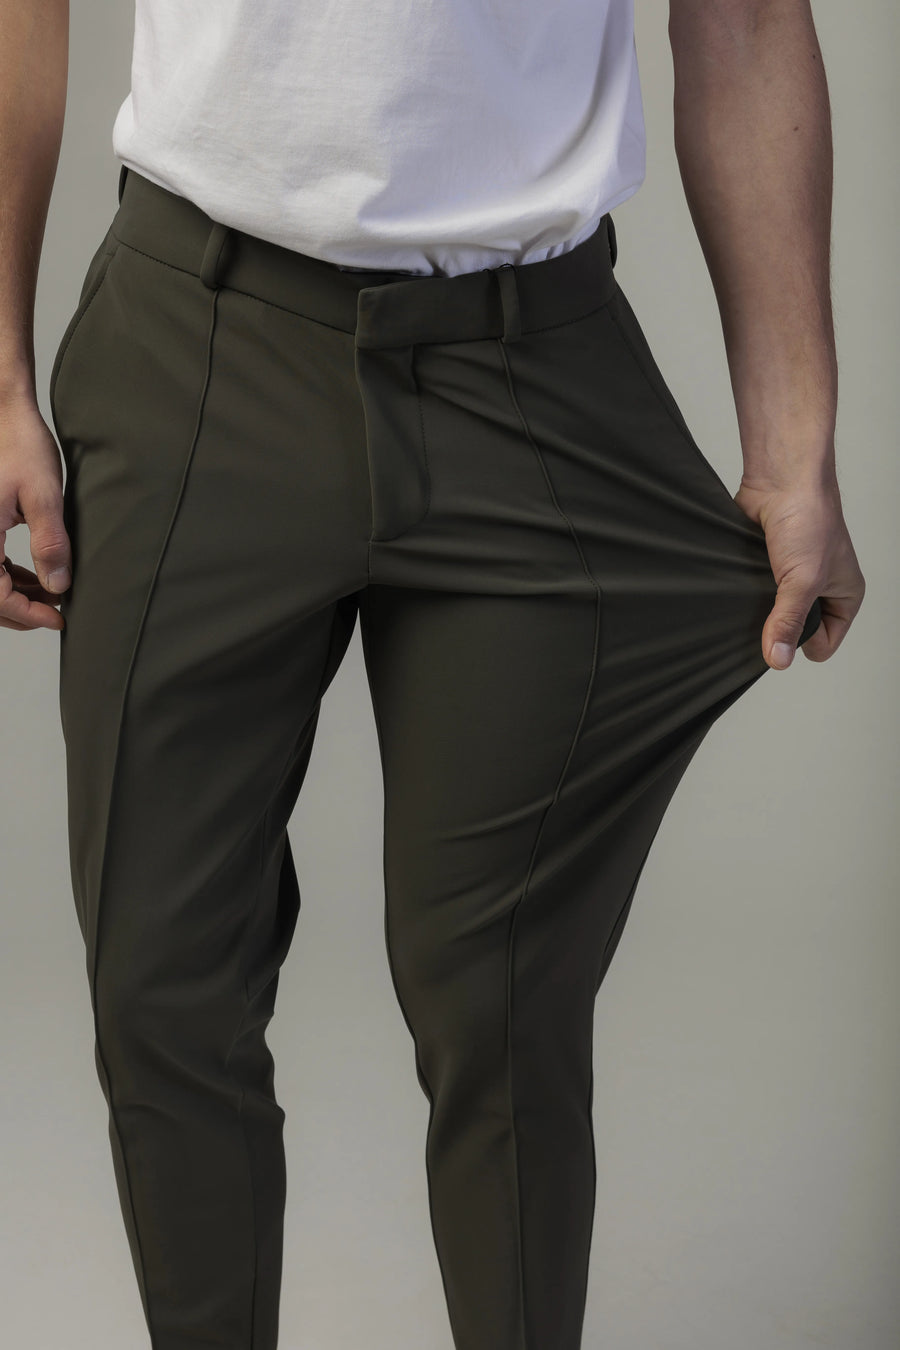 Pantaloni Verde Inchis Barbati, Pantaloni Confort Line, Pantaloni Verzi Eleganti Barbati 